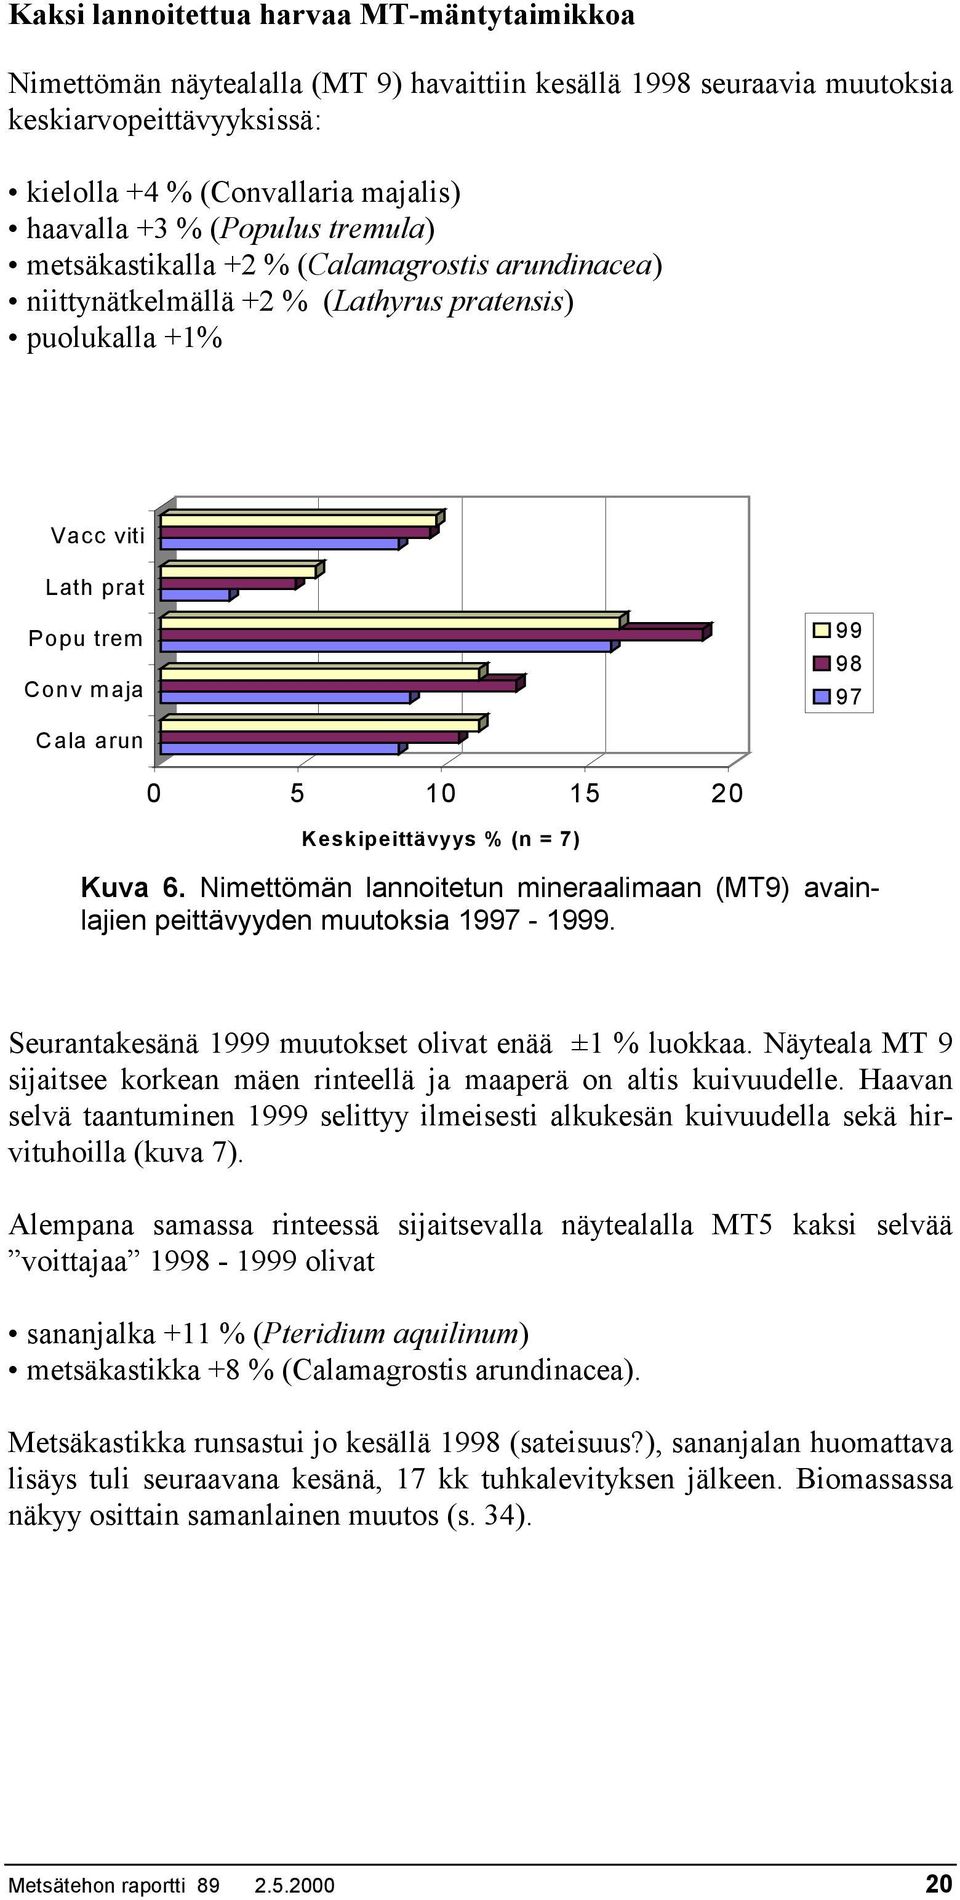 Keskipeittävyys % (n = 7) Kuva 6. Nimettömän lannoitetun mineraalimaan (MT9) avainlajien peittävyyden muutoksia 1997-1999. Seurantakesänä 1999 muutokset olivat enää ±1 % luokkaa.